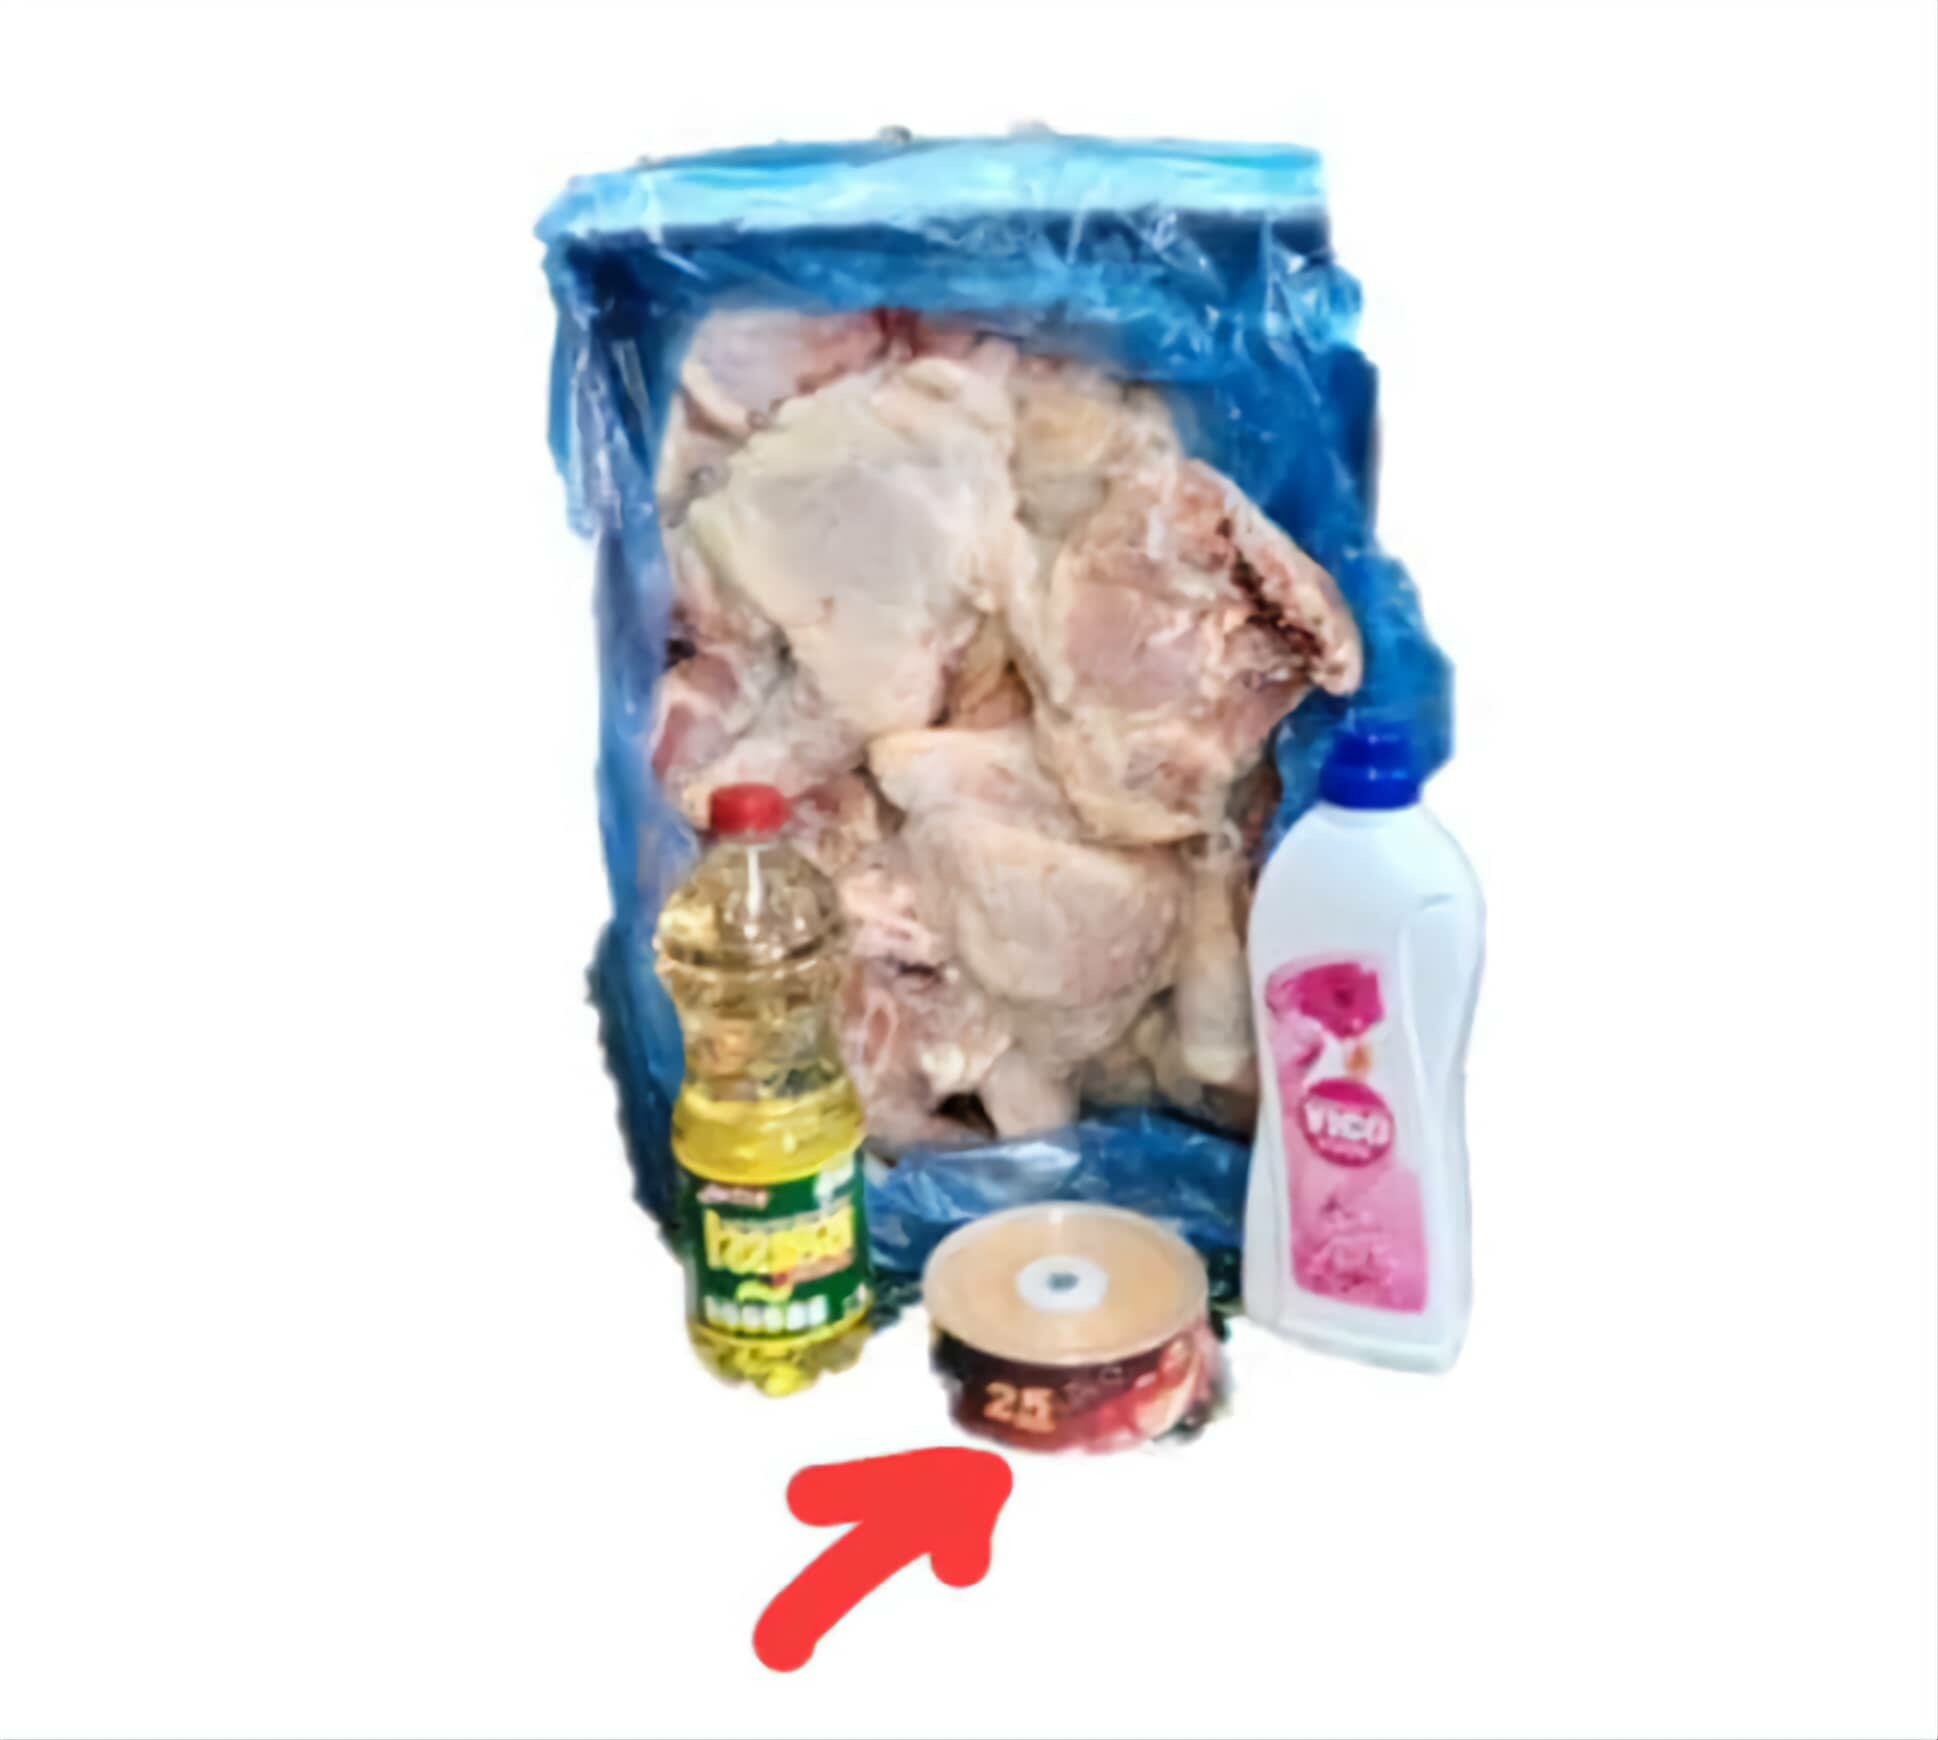 venta de “pollo, aceite, suavizante y varios CD” por más de 980 pesos cubanos.